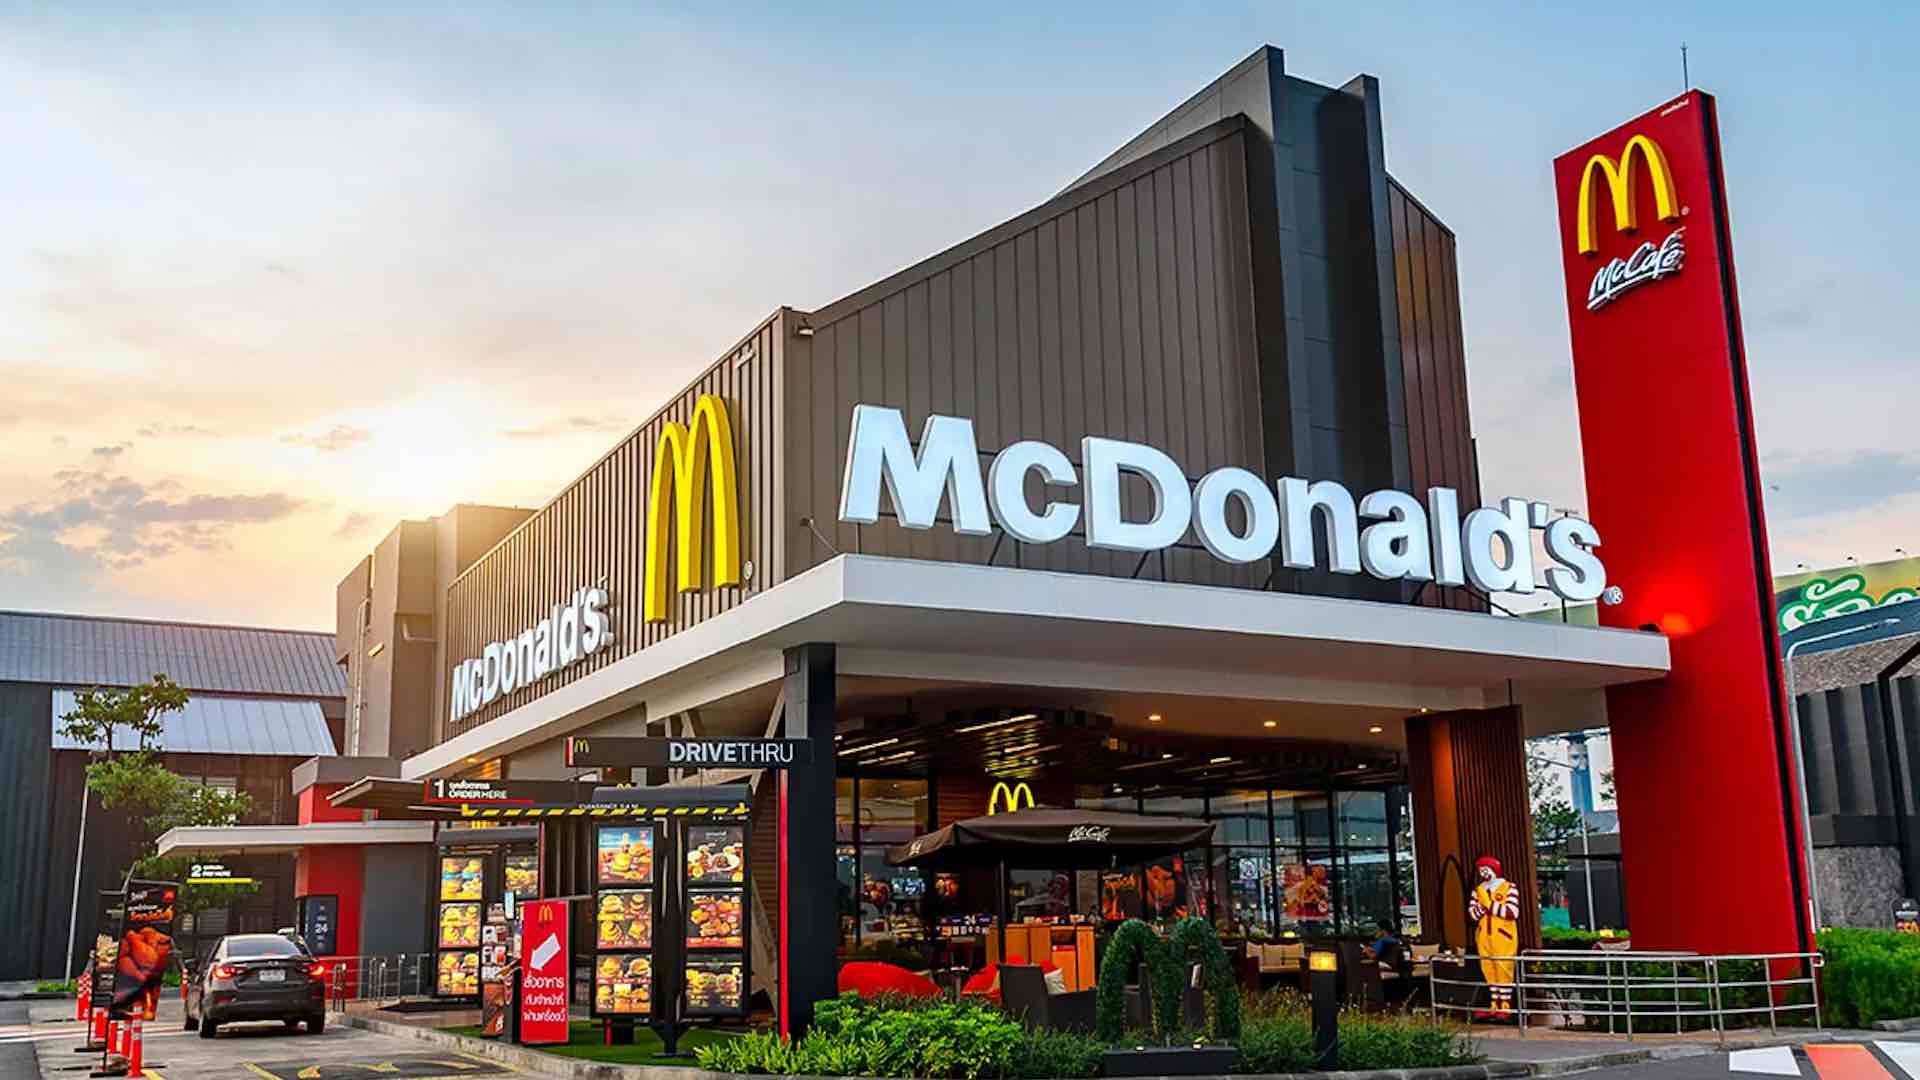 ماكدونالدز تعلن شراء كامل الامتياز الخاص بها في إسرائيل